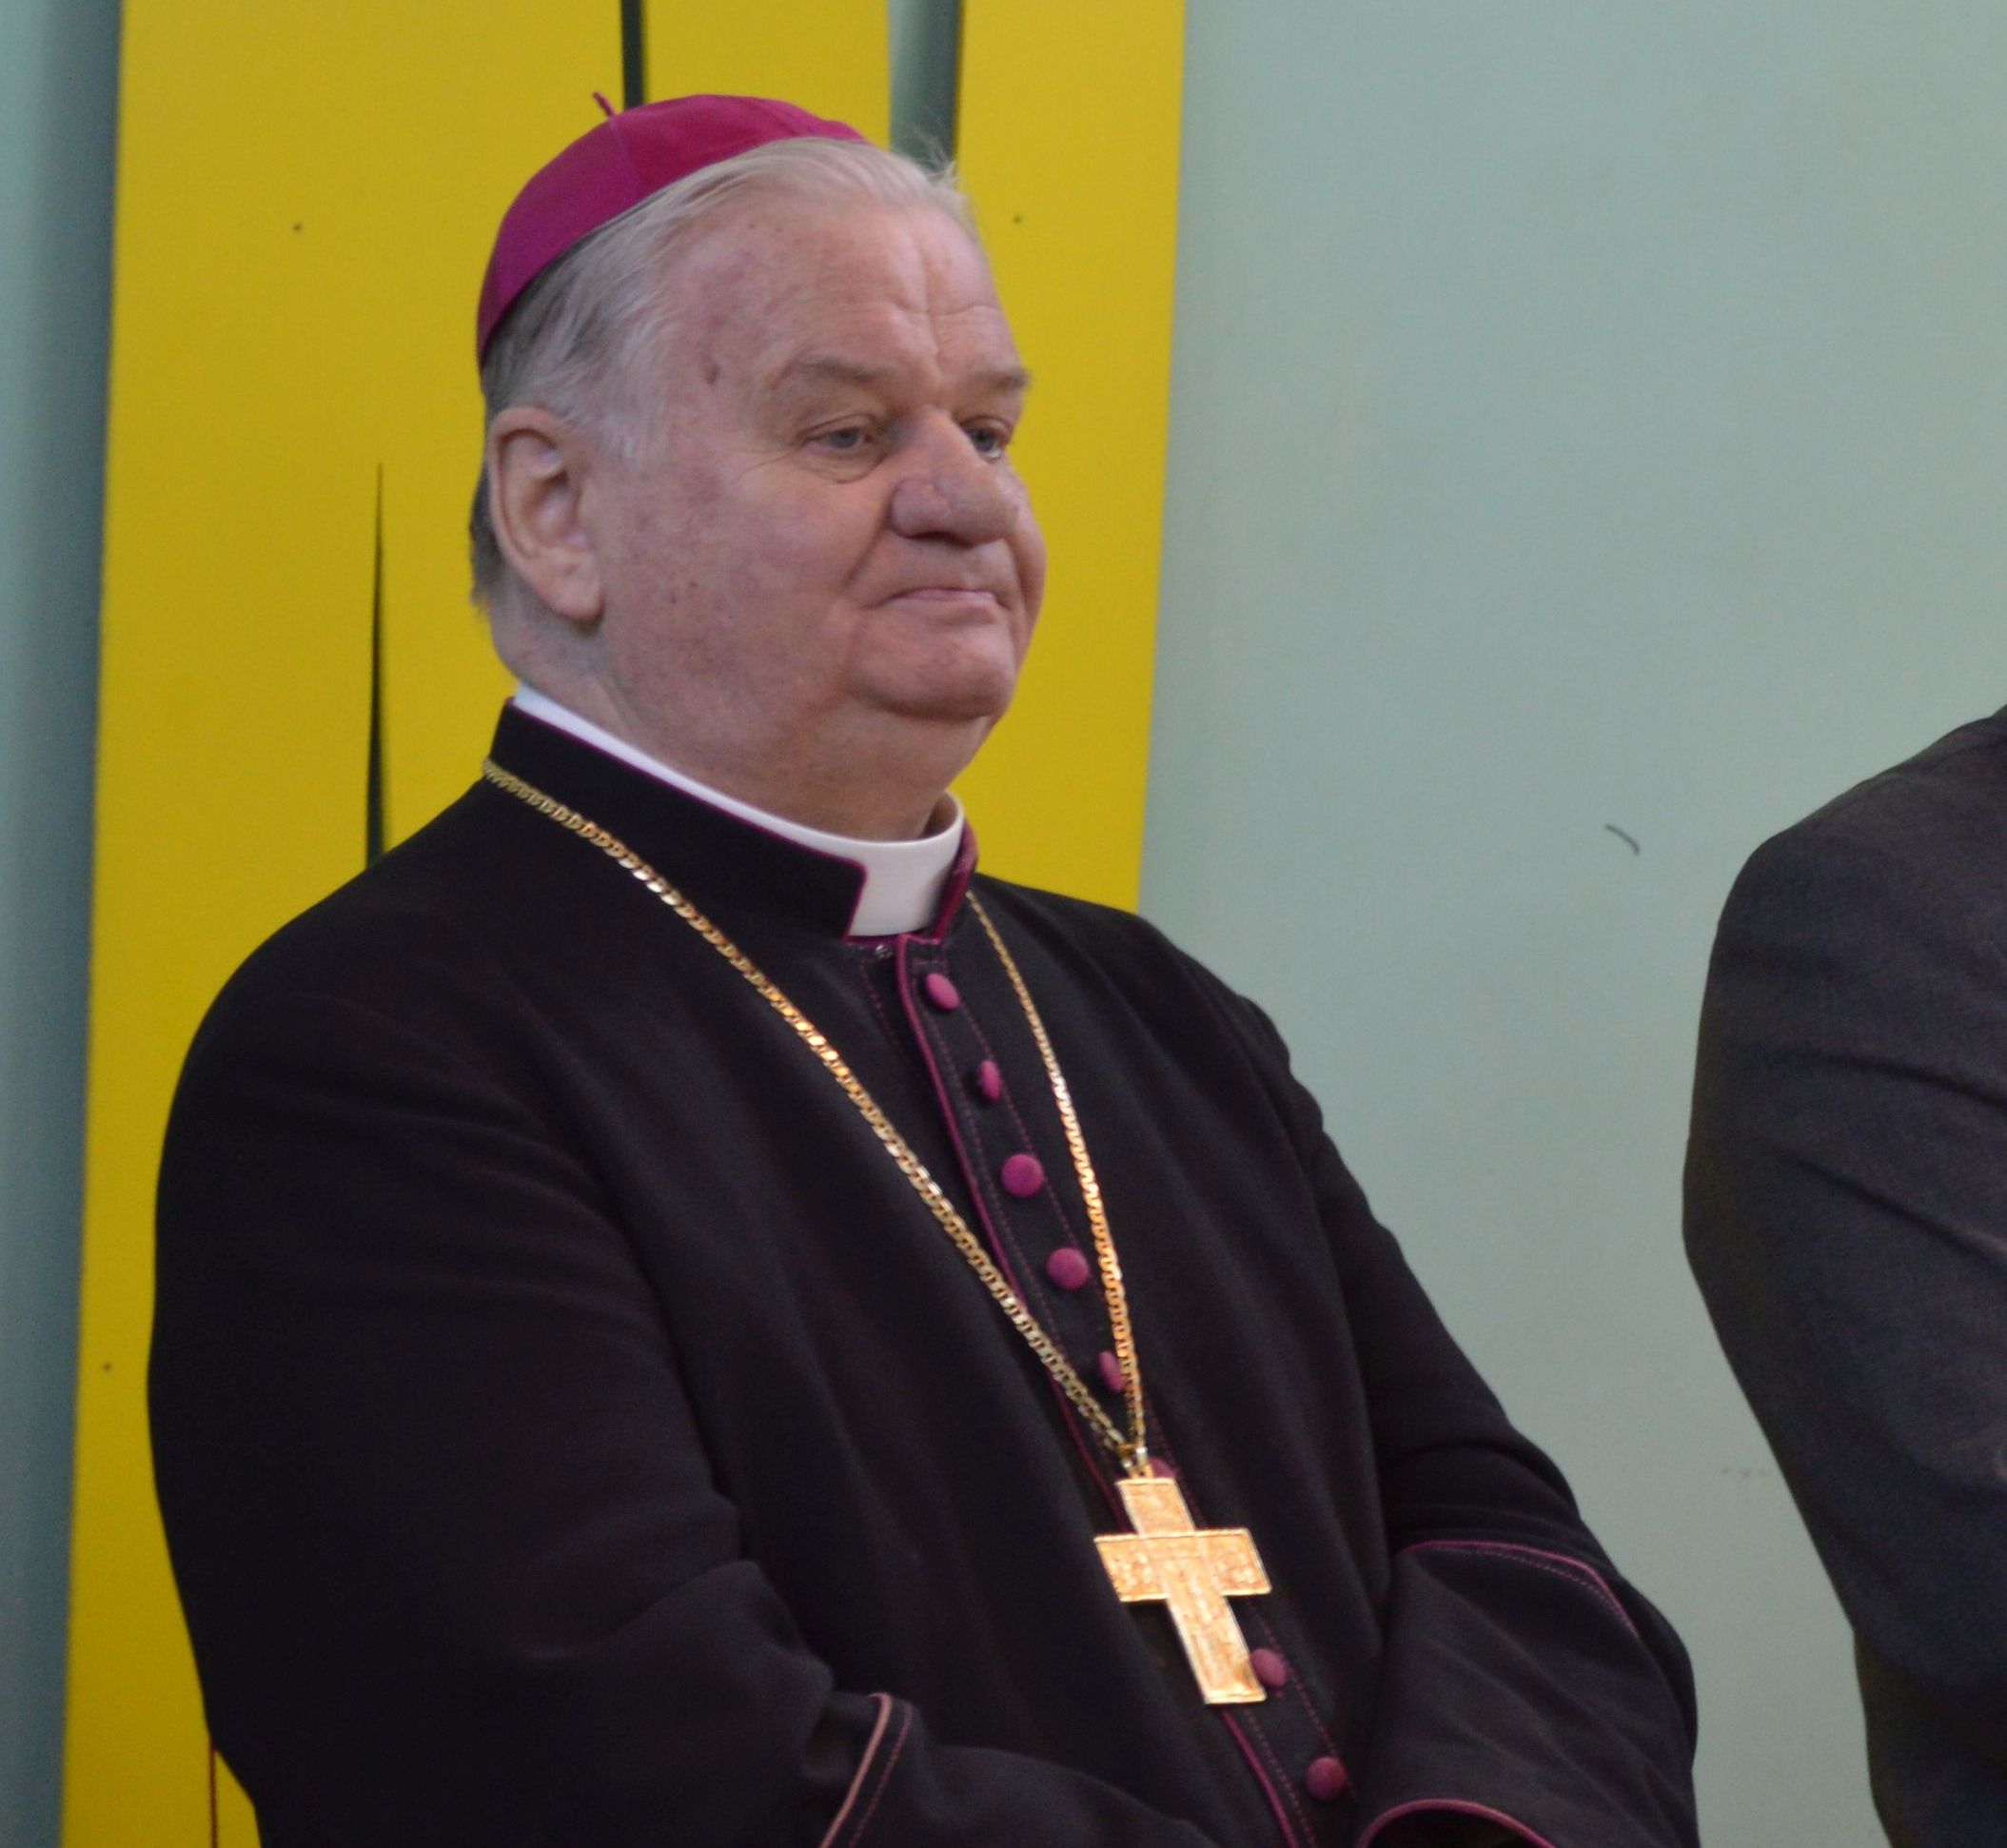 Komisja ds. pedofilii zajęła się biskupami. Sprawa wylądowała w prokuraturze